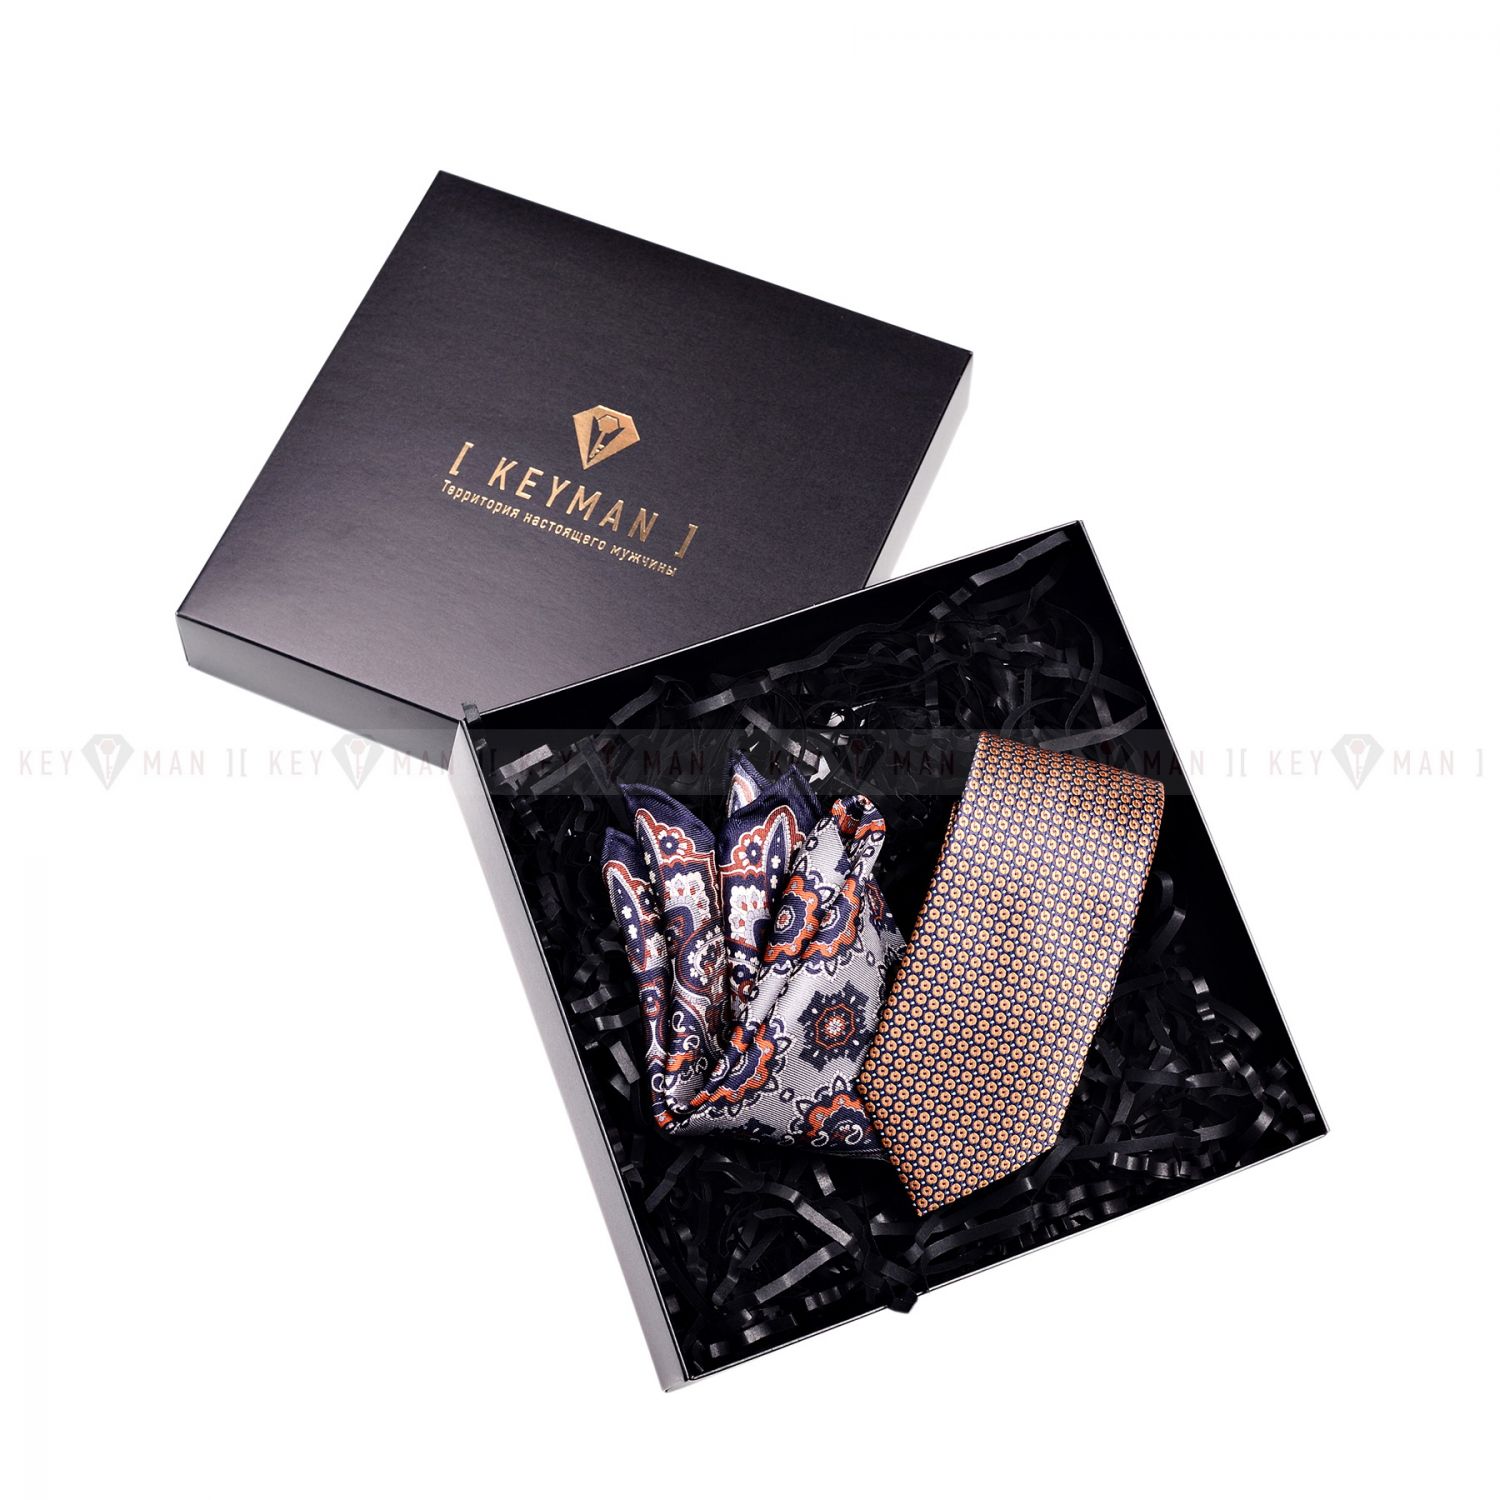 Пример подарочного набора Keyman (фирменная коробочка, галстук, платок)